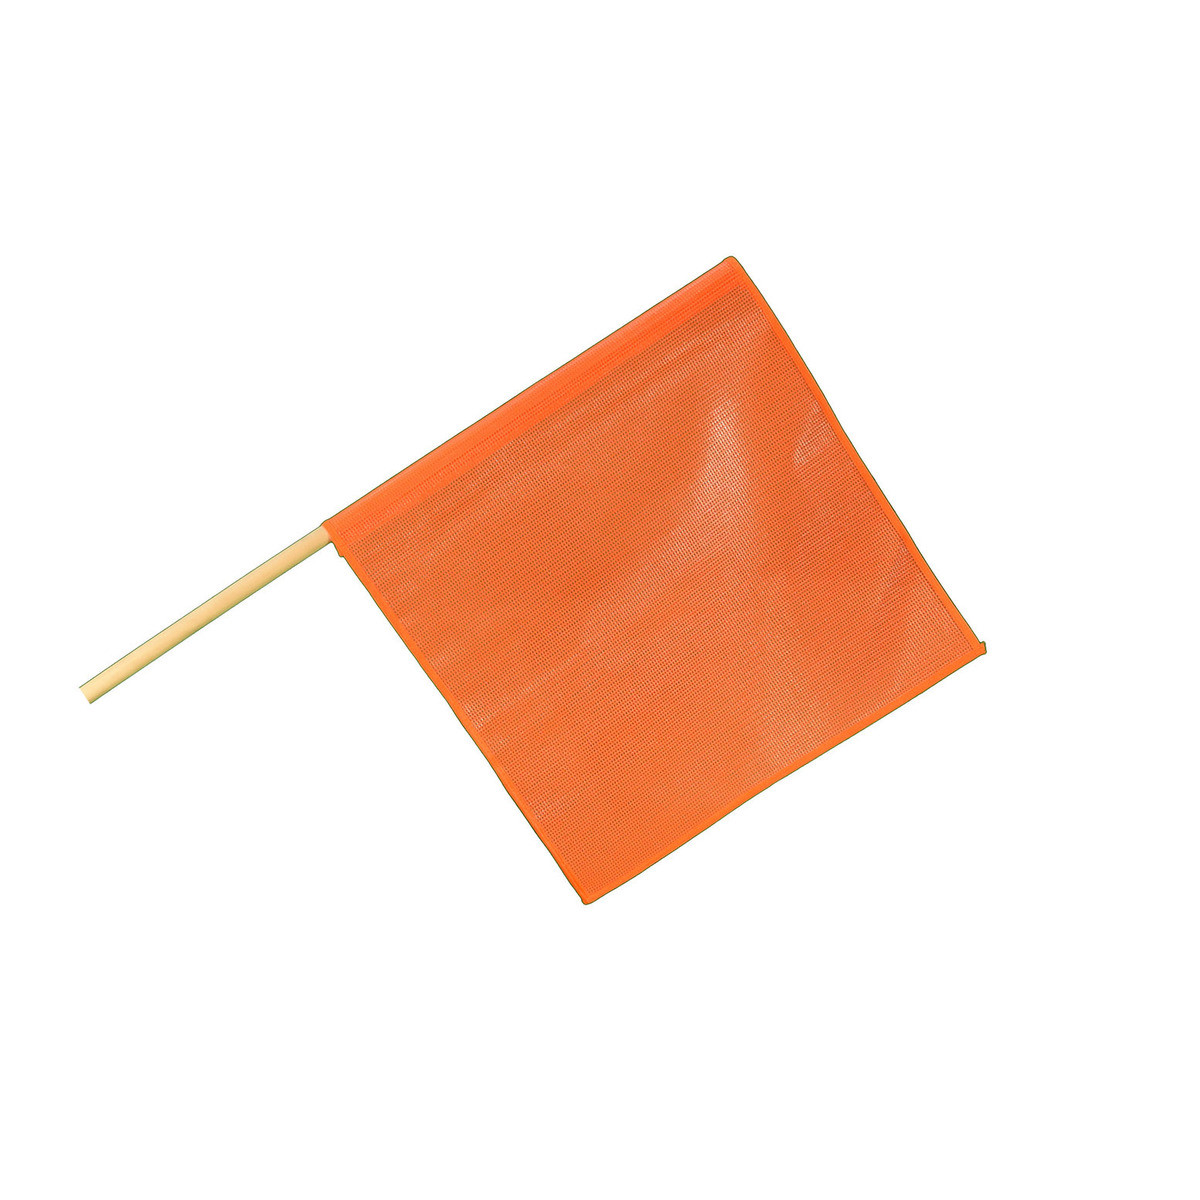 Cortina Safety Products Hi-Viz Red/Orange Mesh Warning Flag